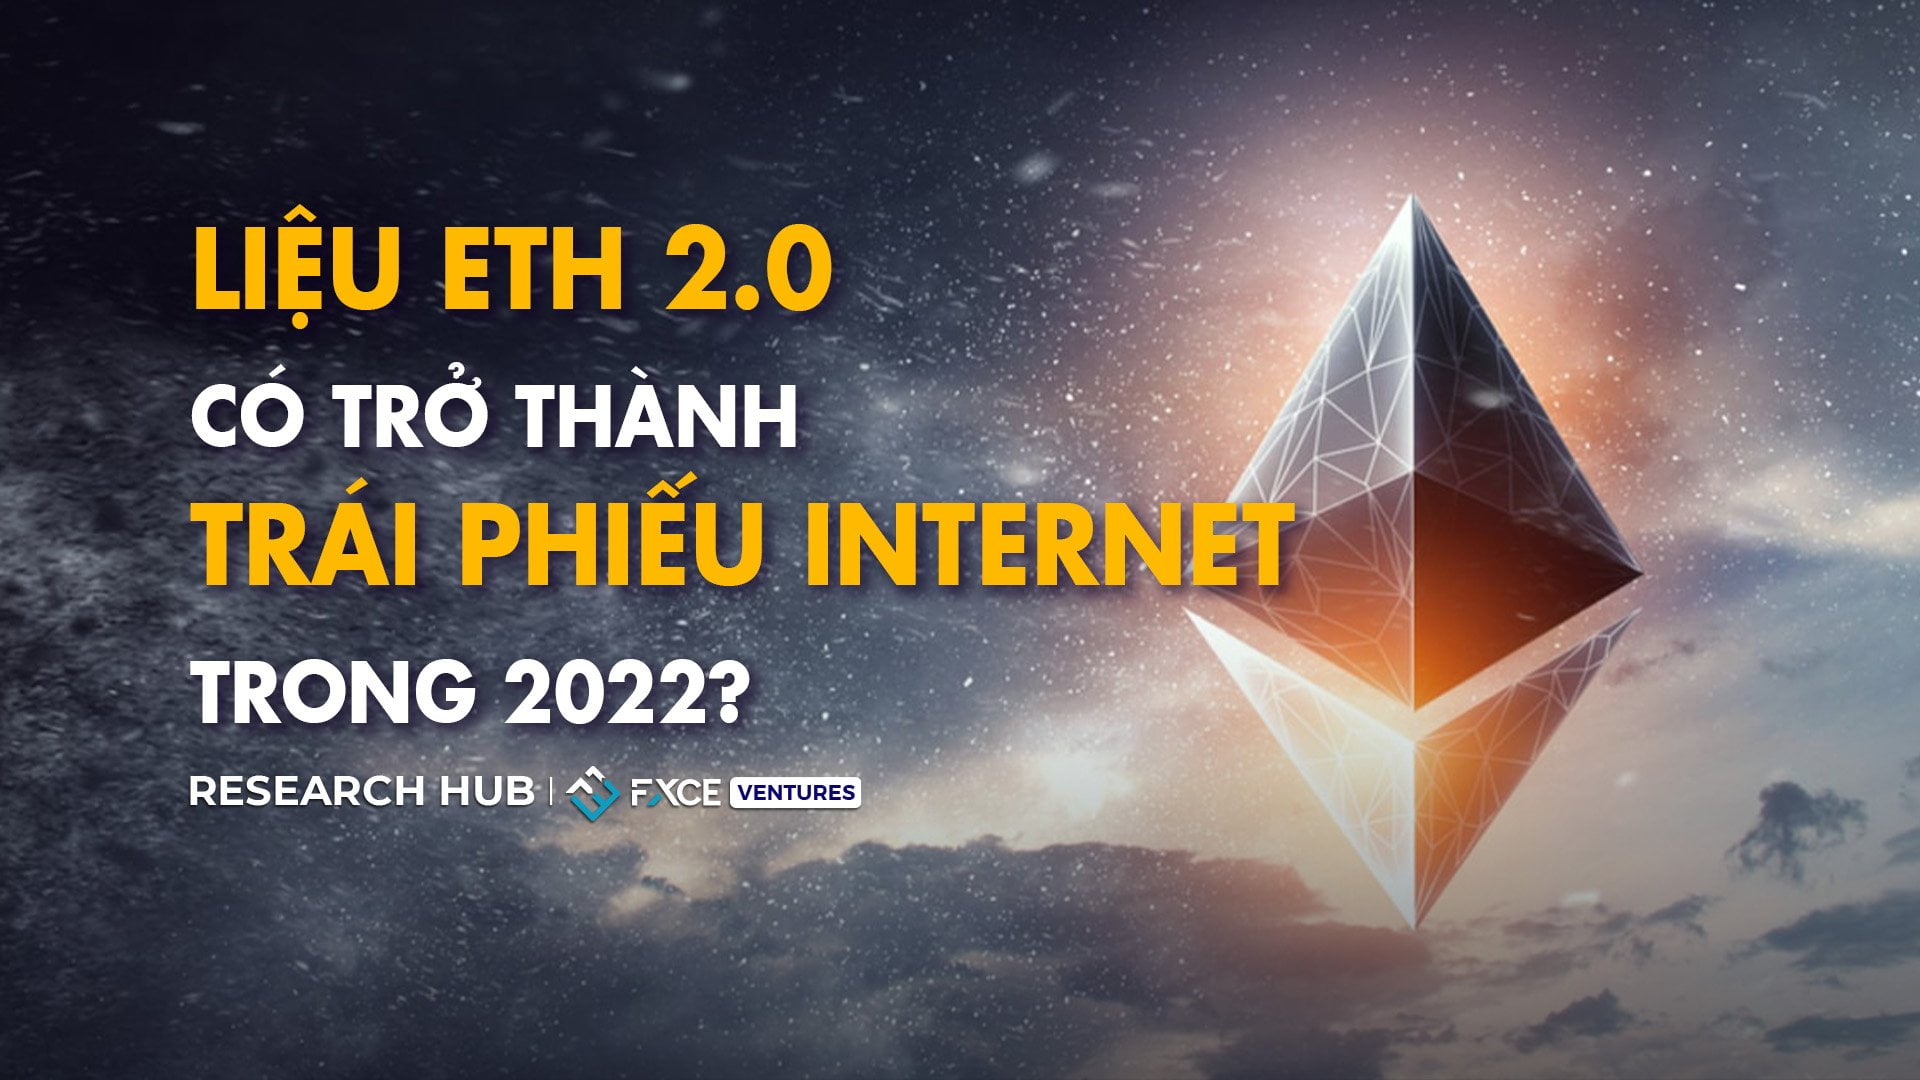 Liệu ETH 2.0 có trở thành Trái phiếu Internet trong 2022?